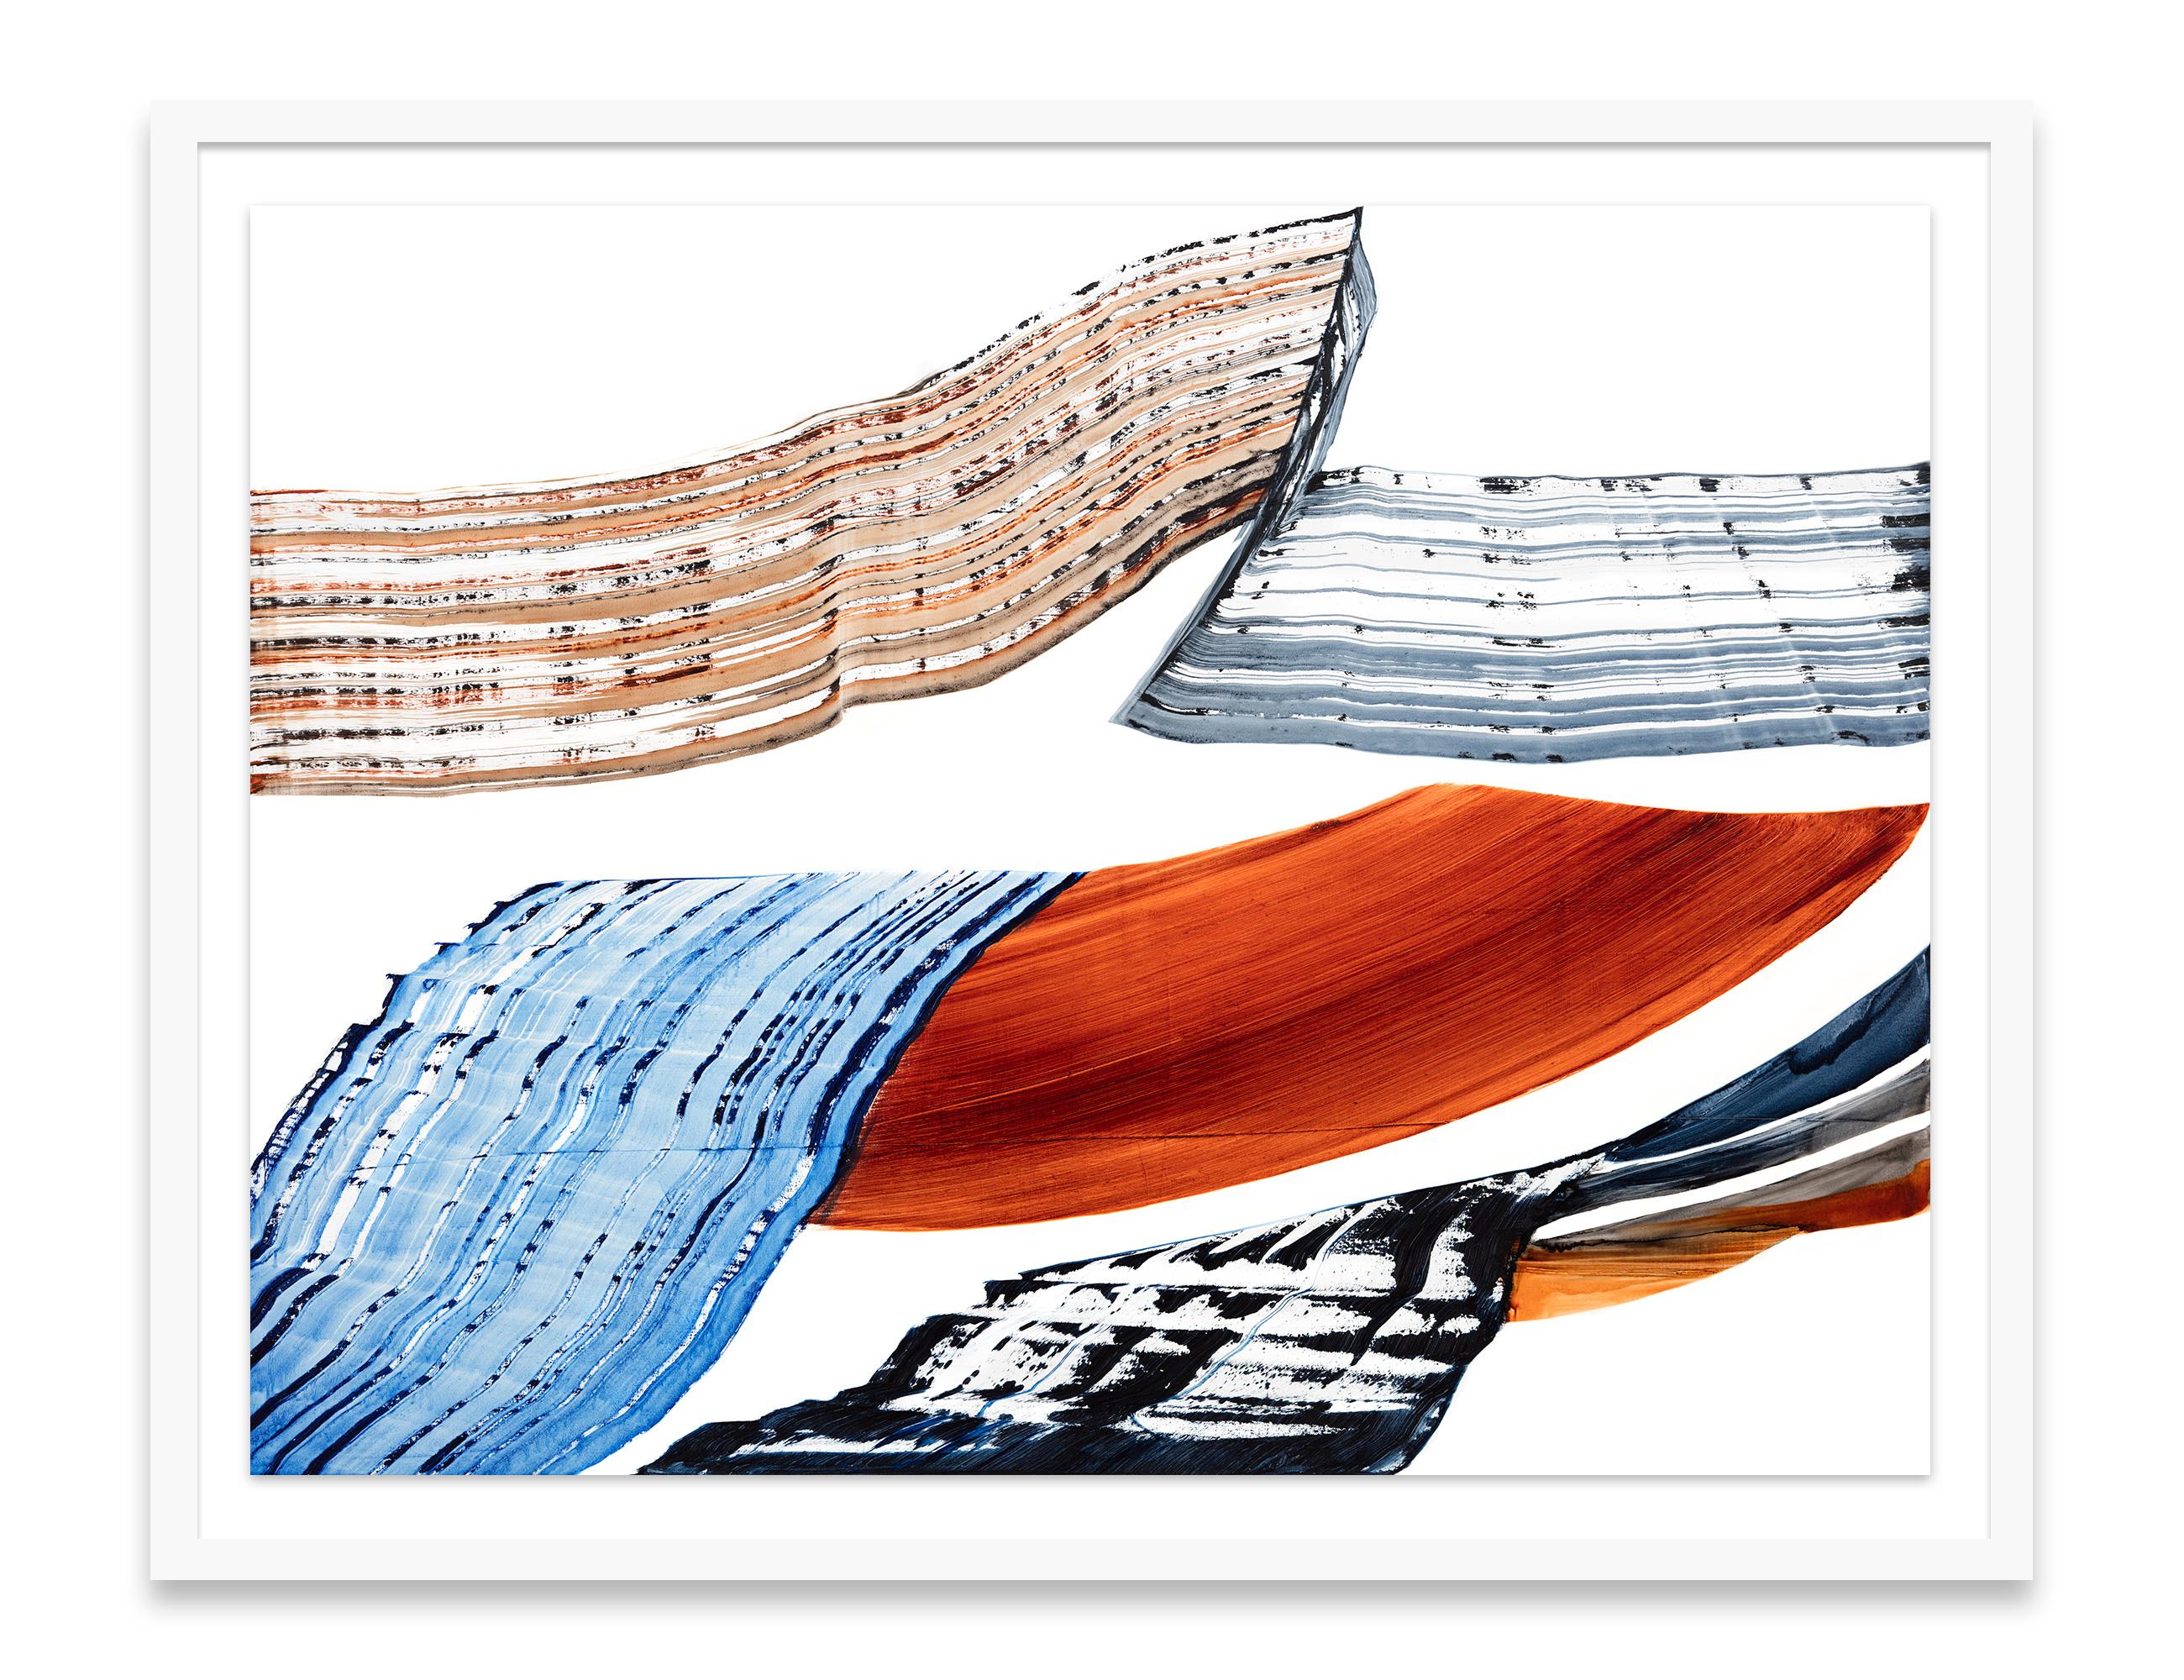 Dieser ungerahmte, signierte, limitierte Pigmentdruck des weltbekannten Künstlers Ricardo Mazal existiert in einer Auflage von 30 Stück. Das Bild wird mit vollem Beschnitt bis zum Rand des Papiers gedruckt.

Der 1950 in Mexiko-Stadt geborene Ricardo